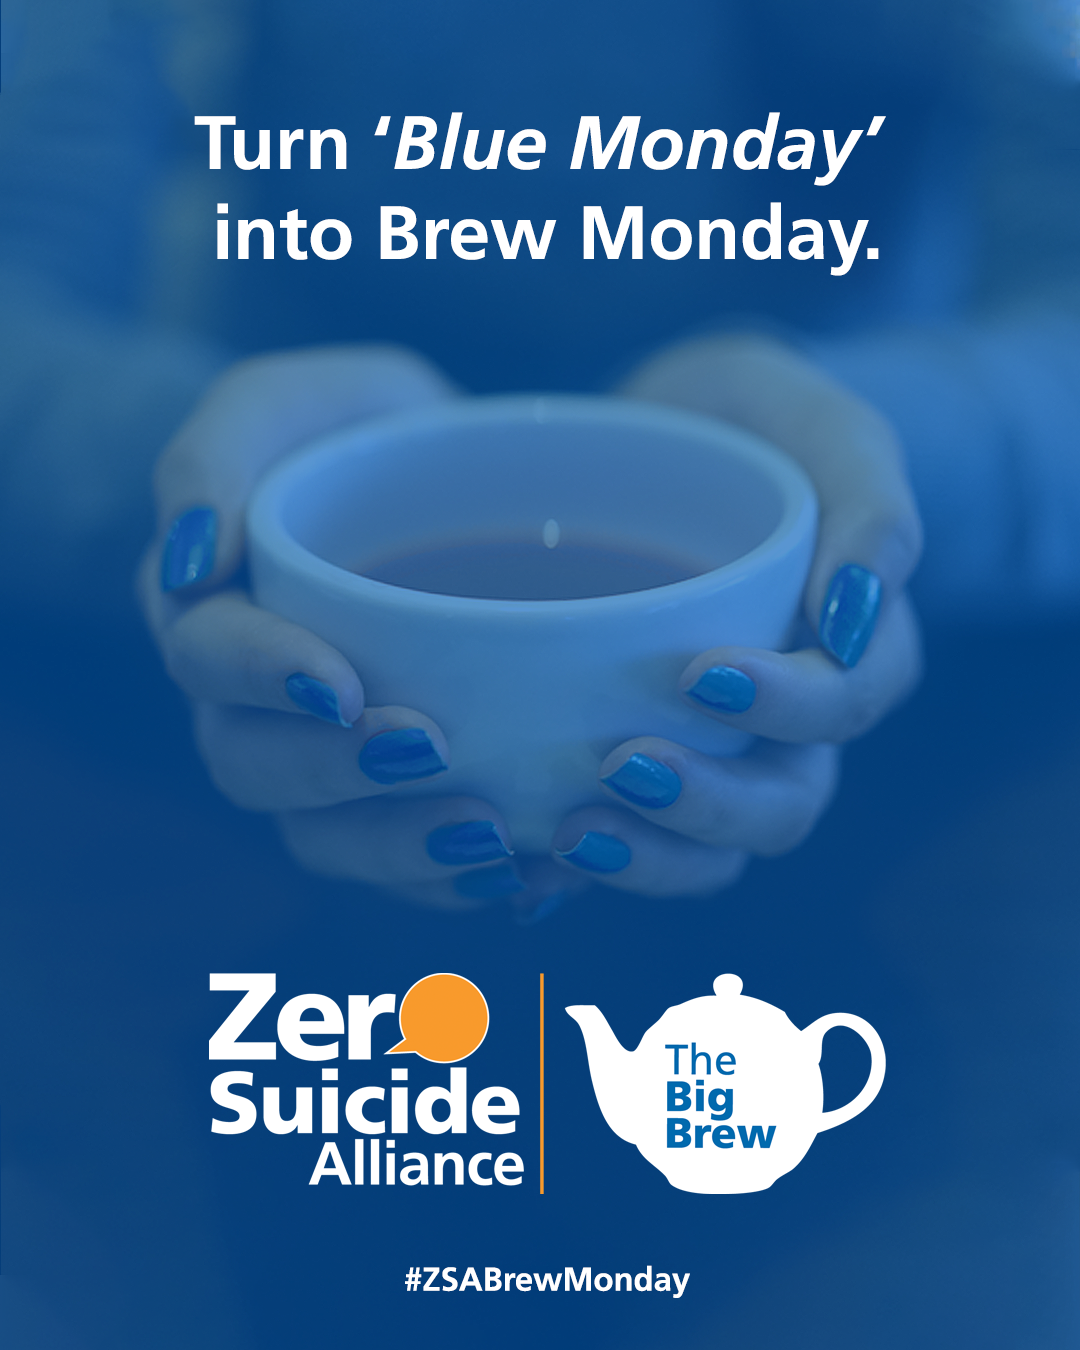 Make Blue Monday a Brew Monday